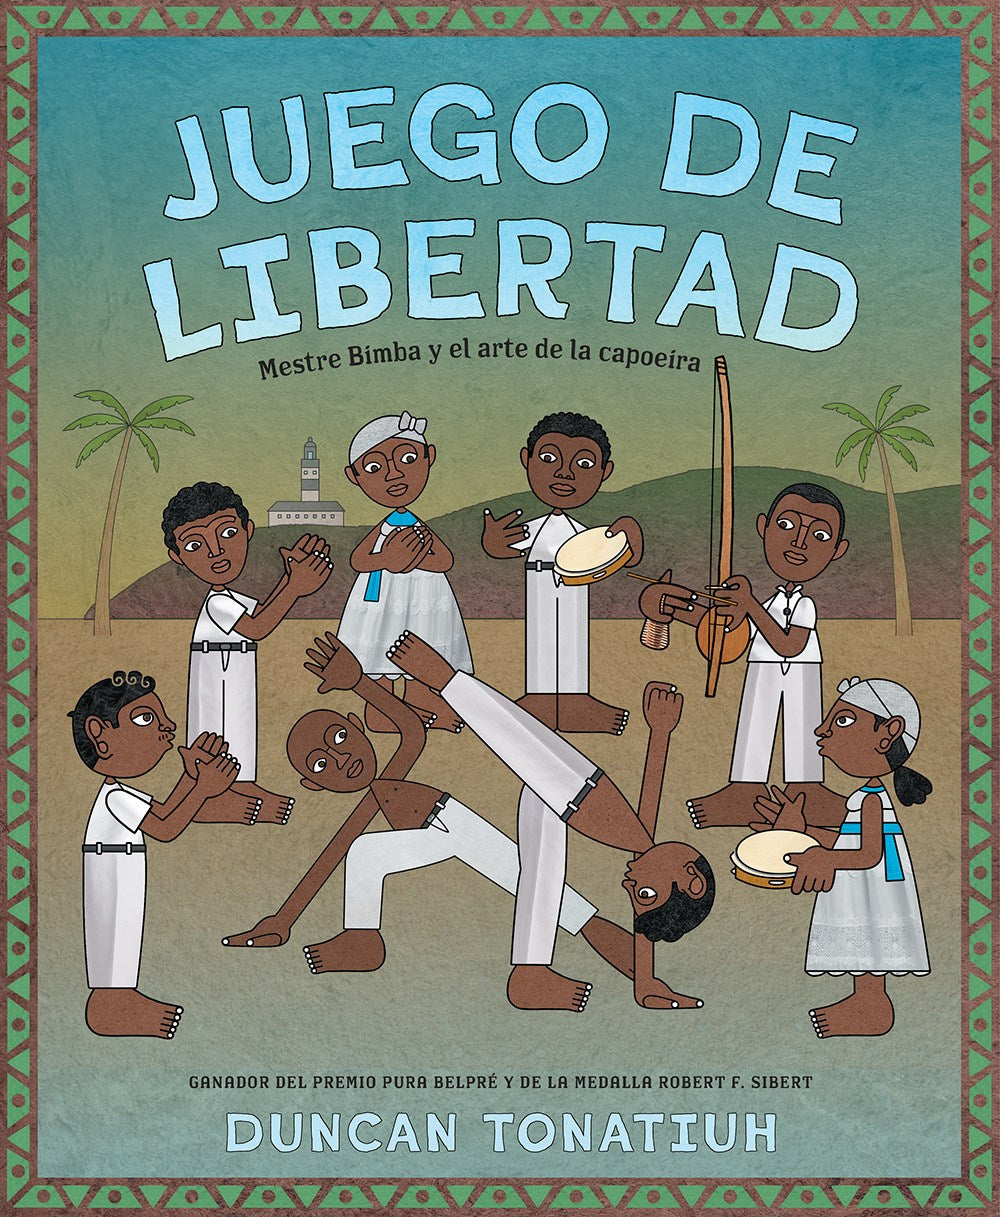 Juego de libertad : Mestre Bimba y el arte de la capoeira (Game of Freedom Spanish